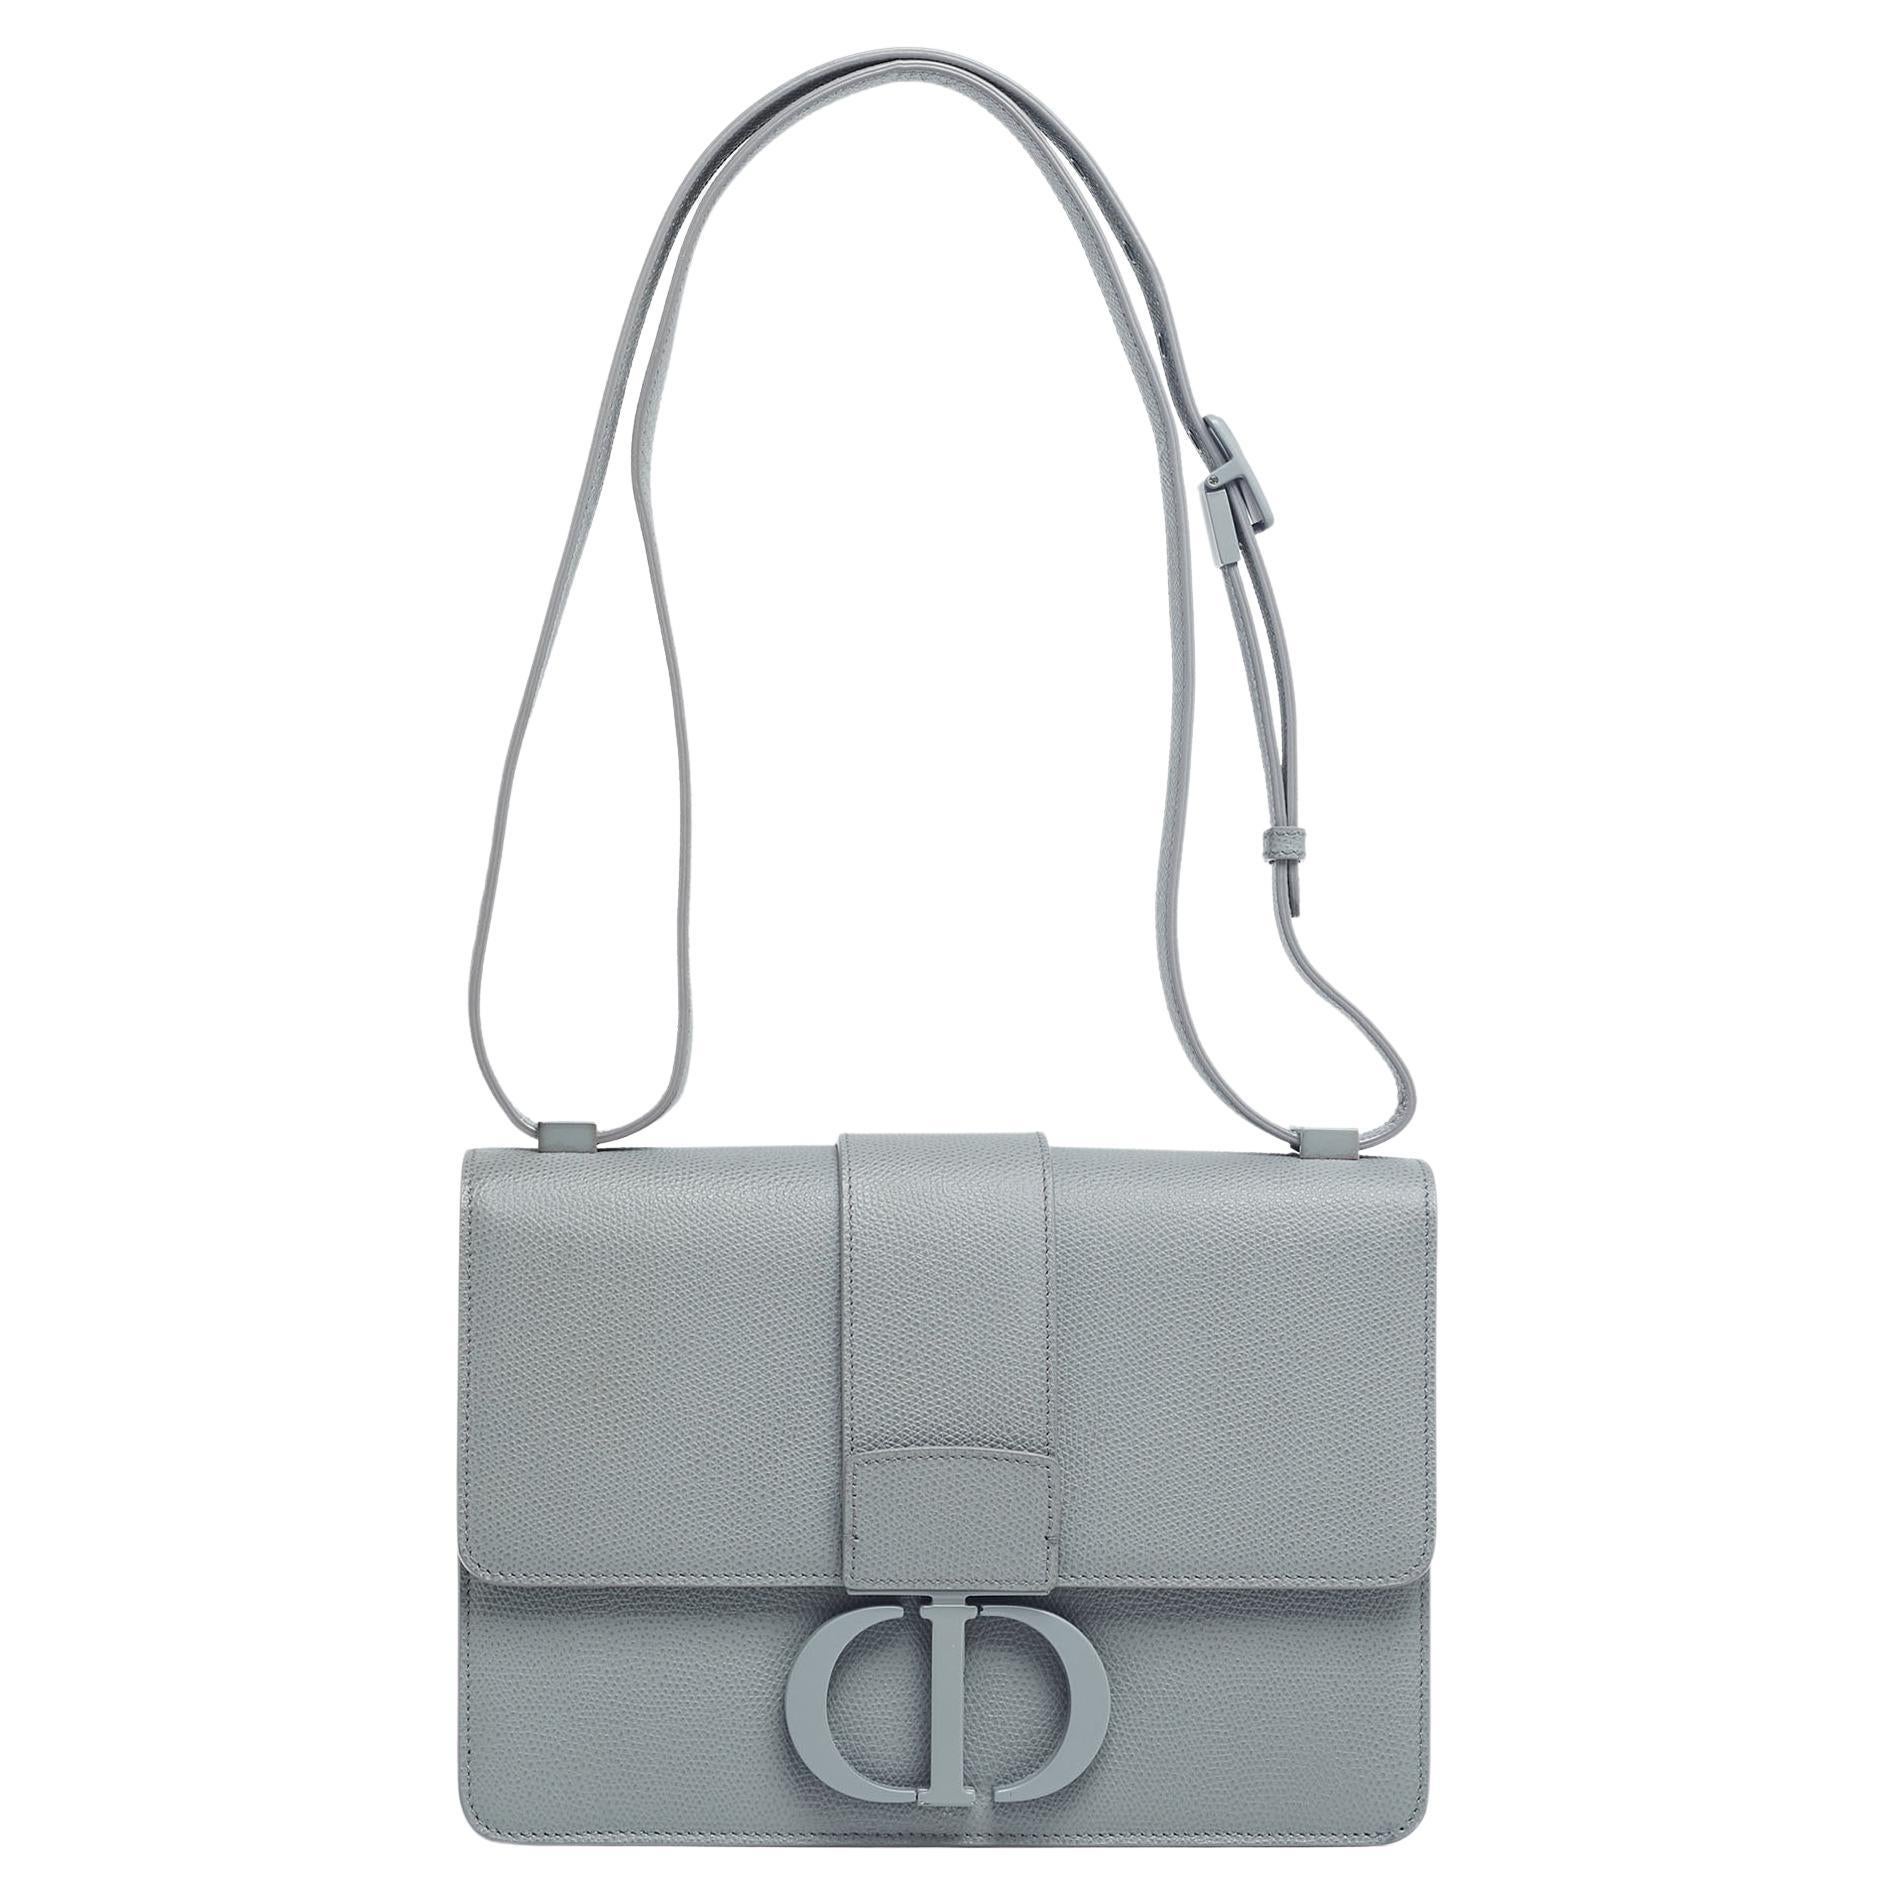 Dior 30 Montaigne bag  Christian dior bags, Dior bag outfit, Bags designer